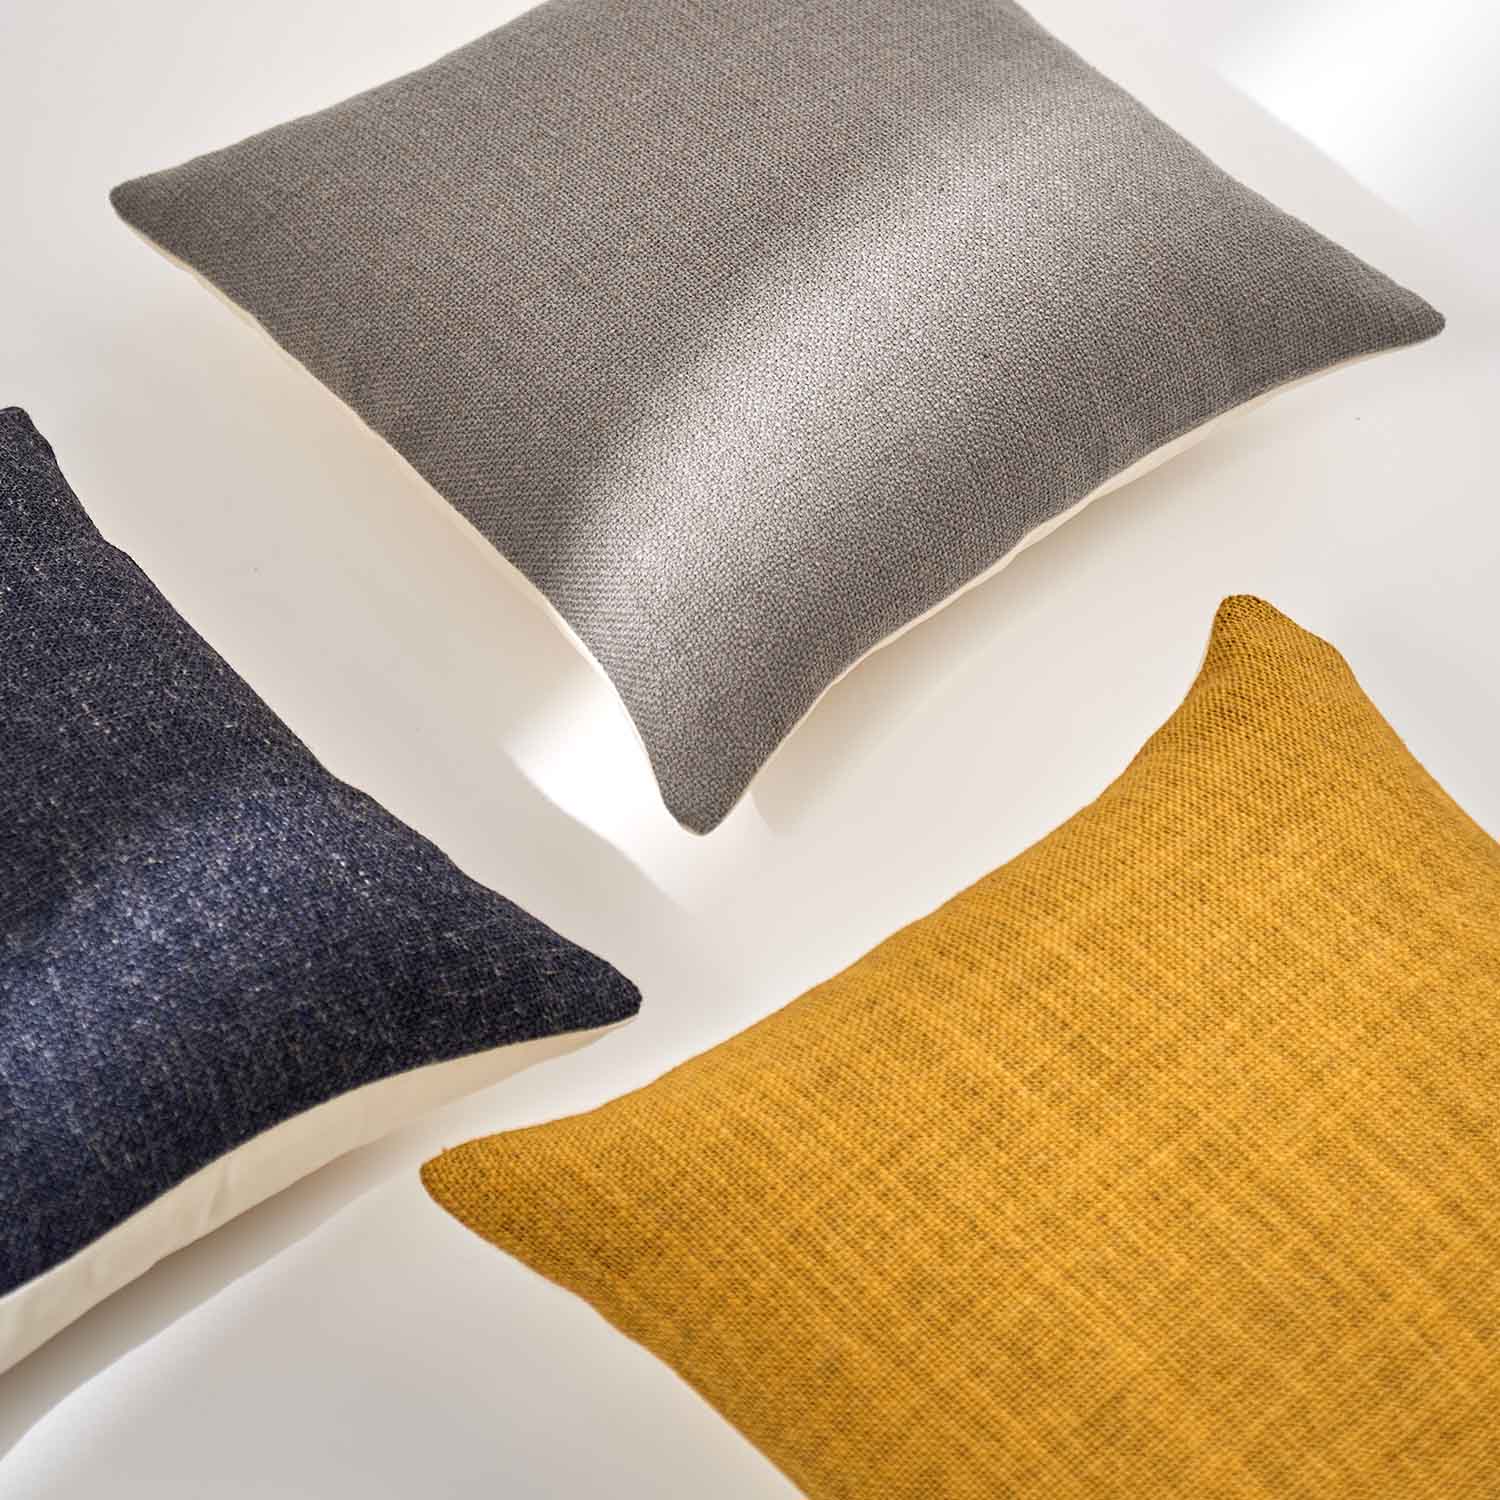 Savona Textured Linen Pillow Cover-belgian flax linen pillow cover